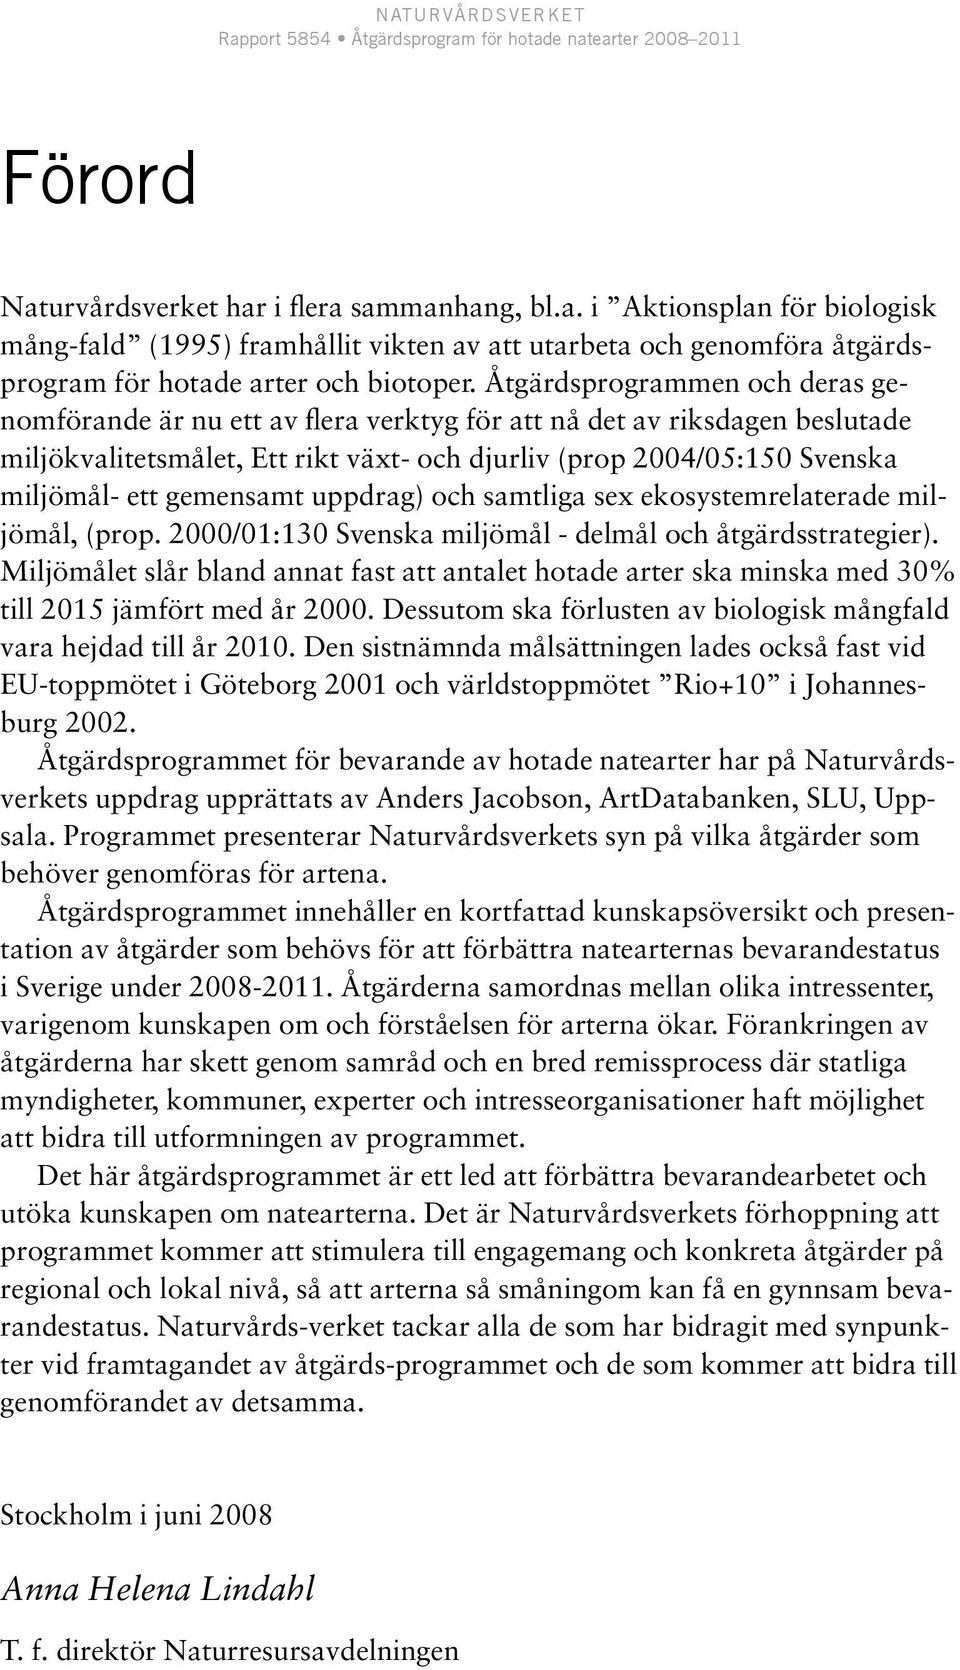 gemensamt uppdrag) och samtliga sex ekosystemrelaterade miljömål, (prop. 2000/01:130 Svenska miljömål - delmål och åtgärdsstrategier).